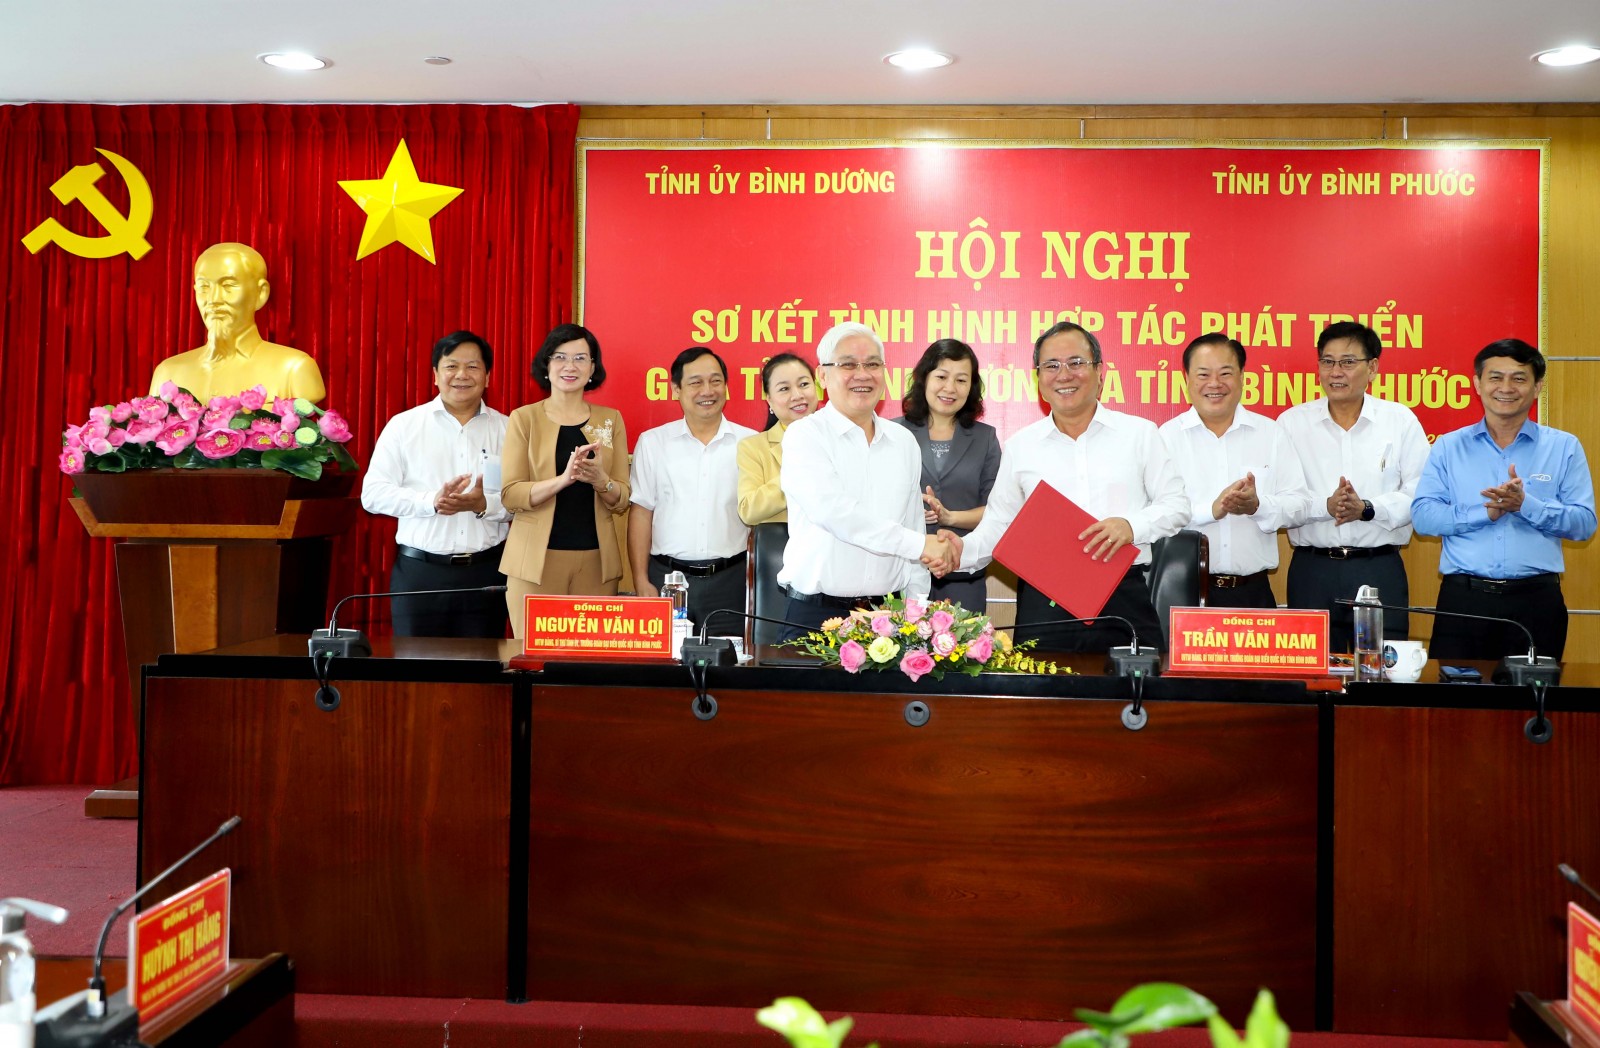 Bí thư Tỉnh ủy Bình Dương Trần Văn Nam và Bí thư Tỉnh ủy Bình Phước Nguyễn Văn Lợi ký kết hợp tác xây dựng đường cao tốc.